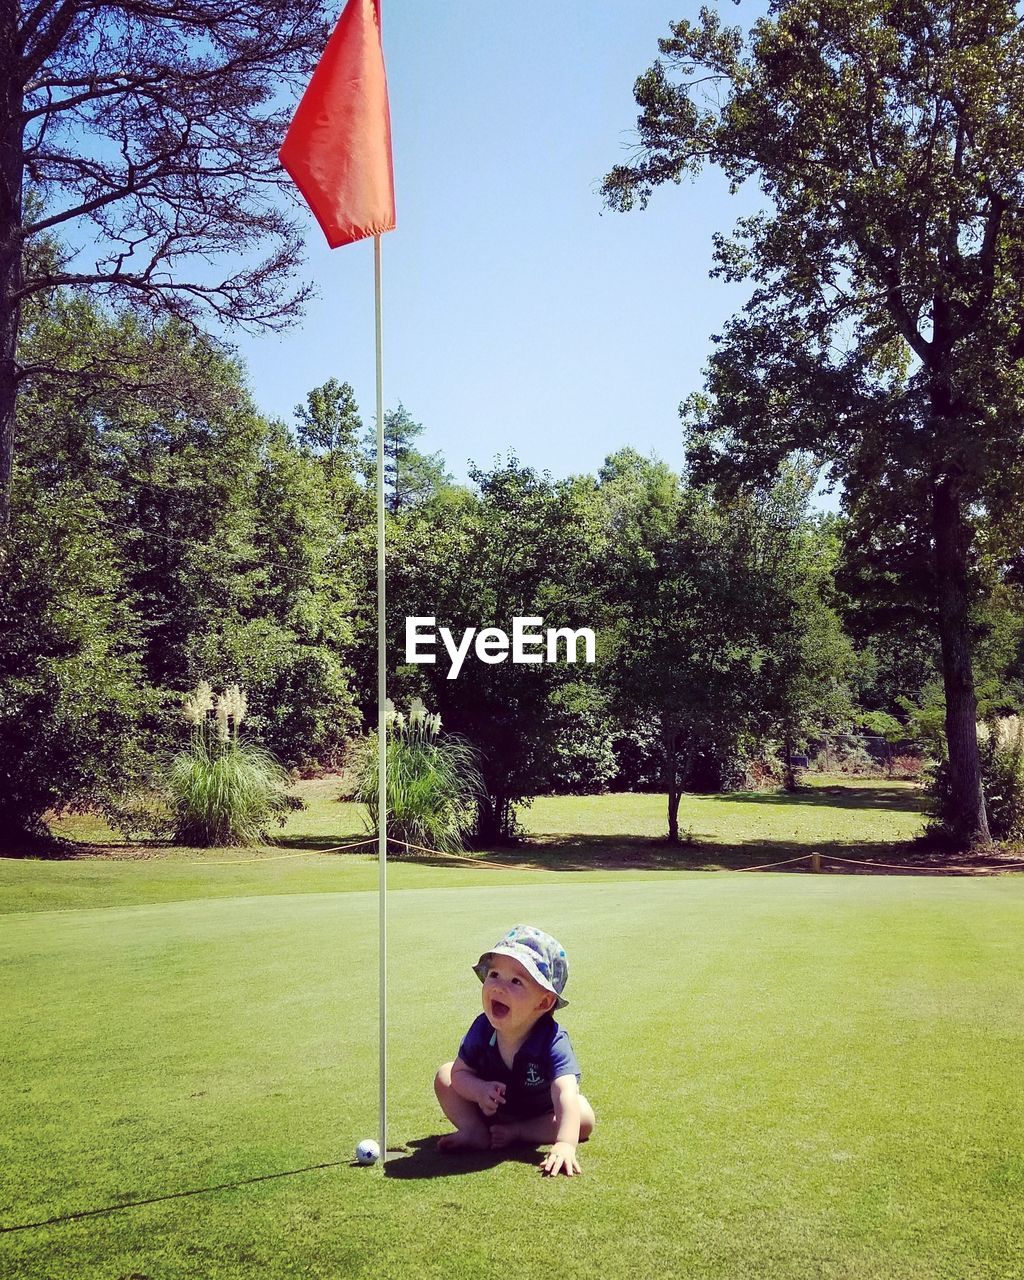 Cute baby boy sitting by golf flag on field